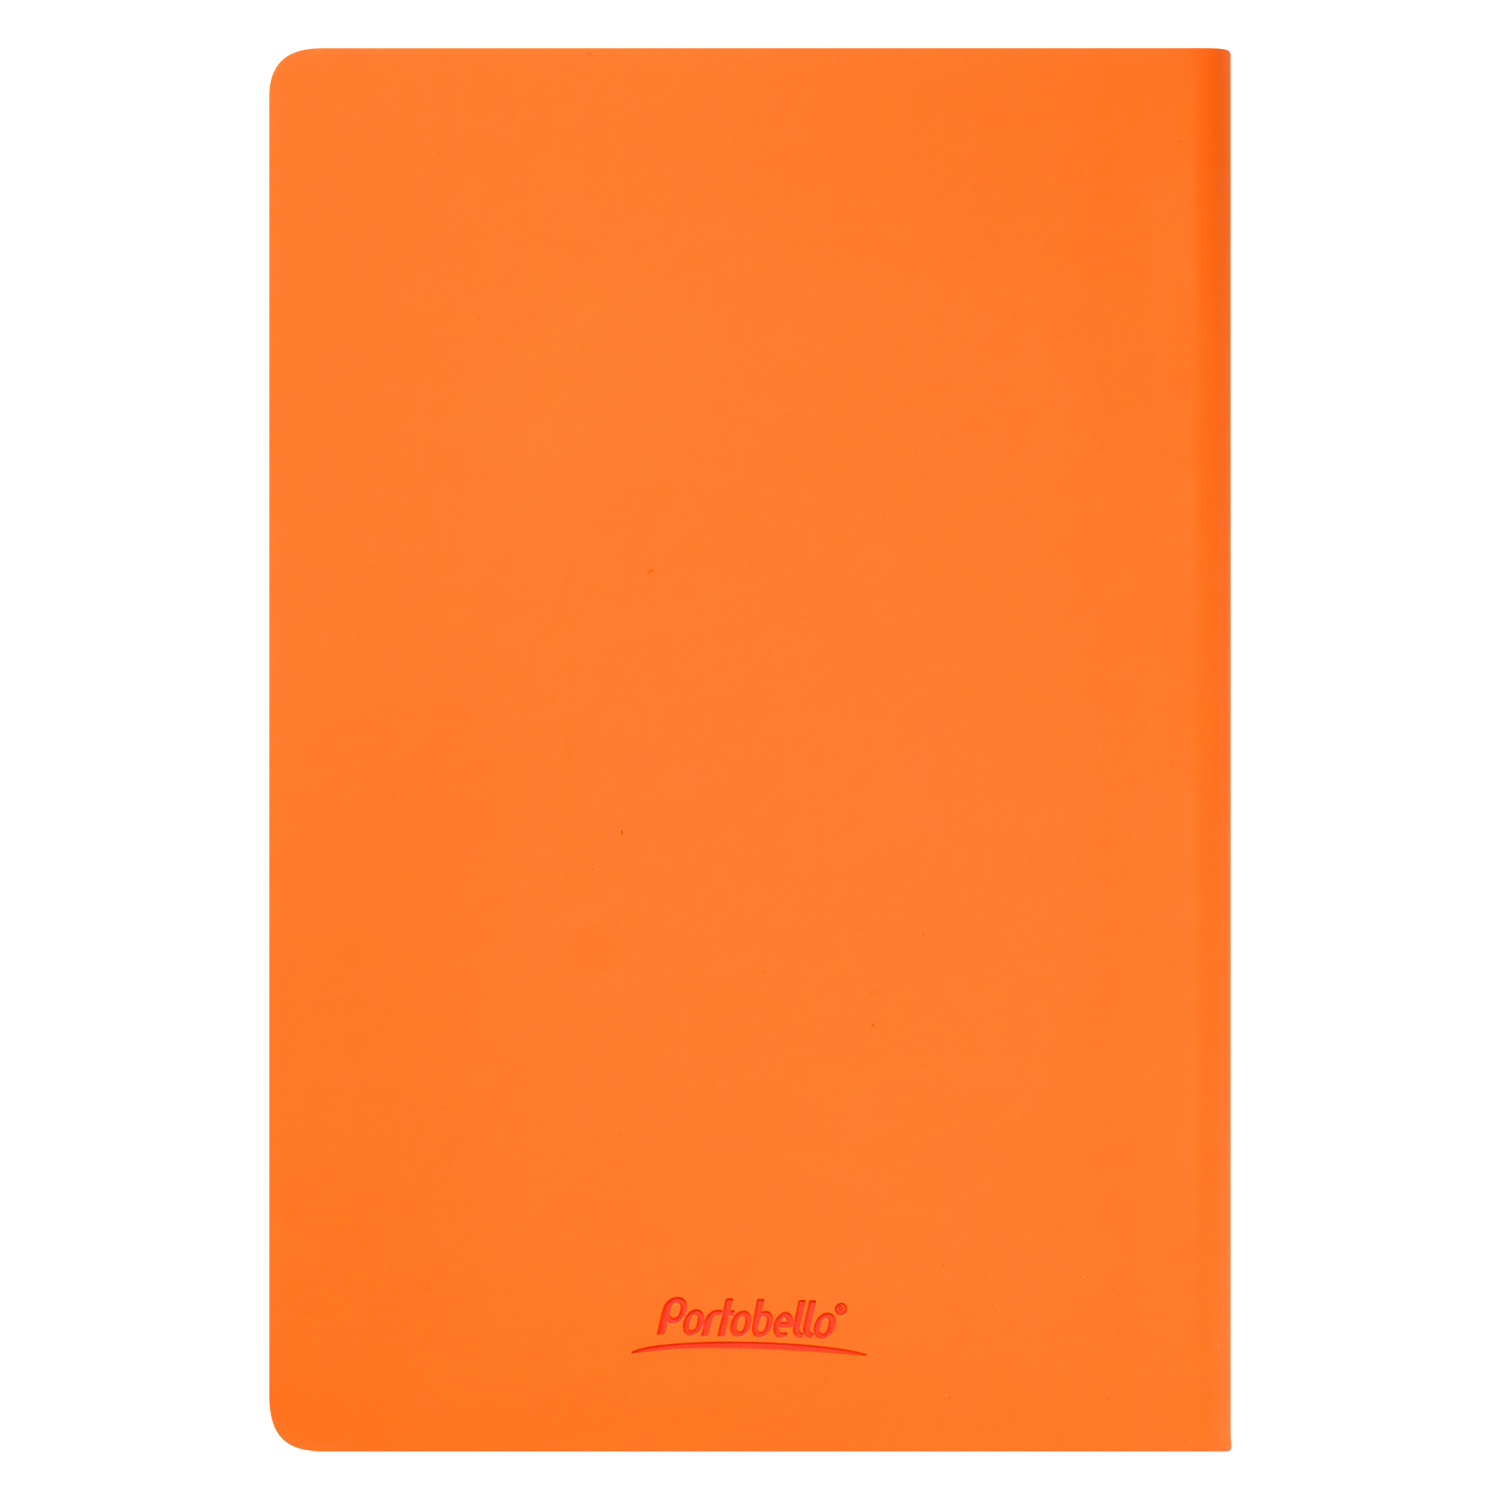 Ежедневник Spark недатированный, оранжевый (без упаковки, без стикера)